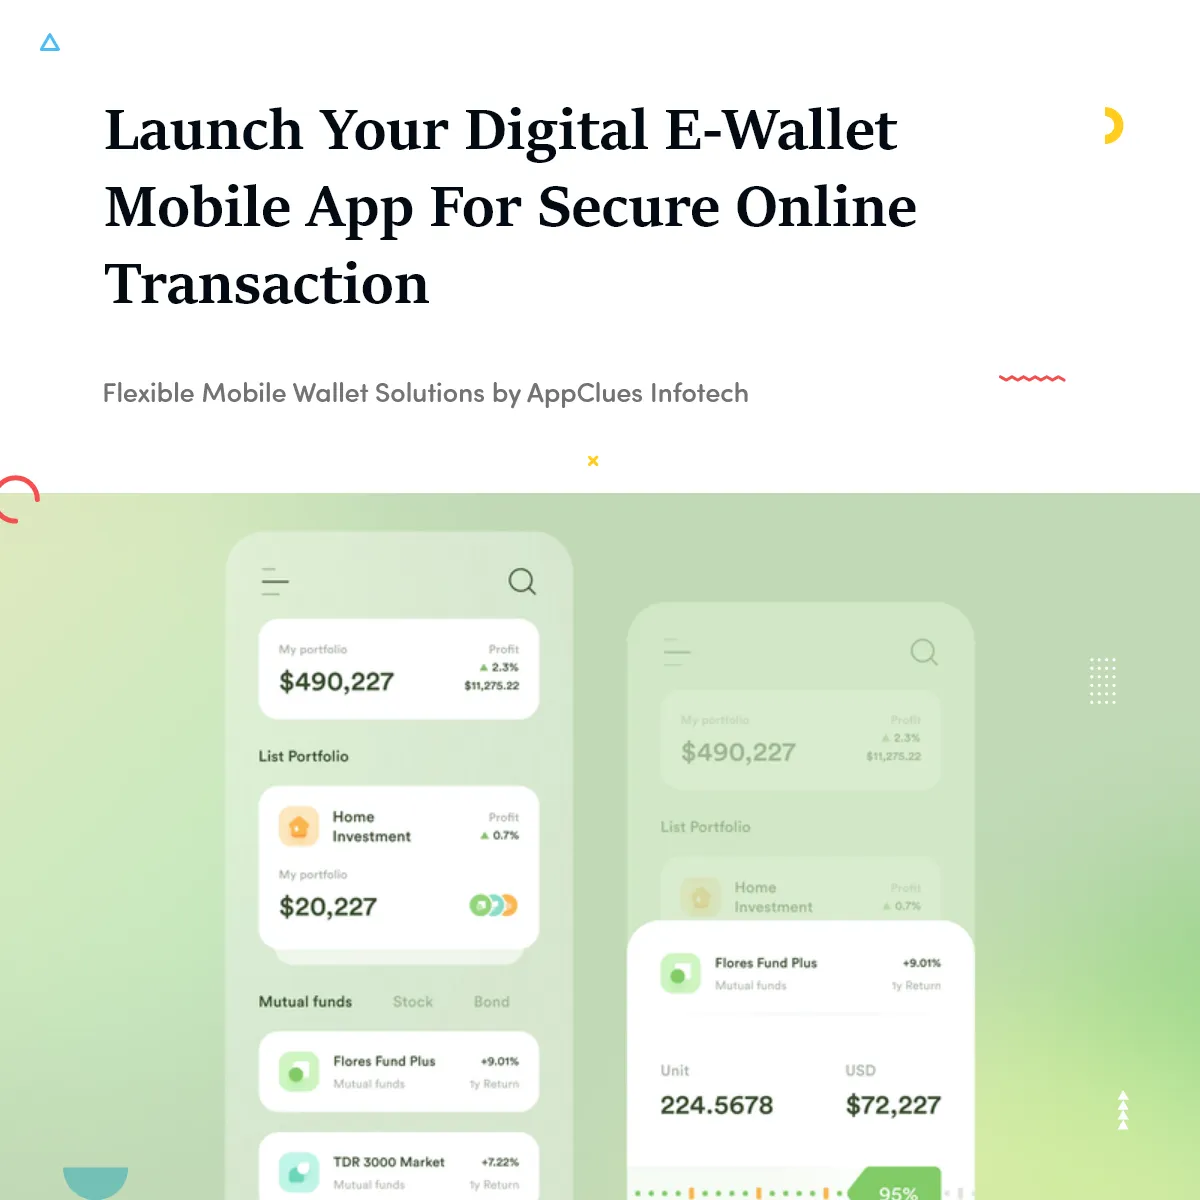 Make Digital E-Wallet Mobile App for Secure Online Transaction